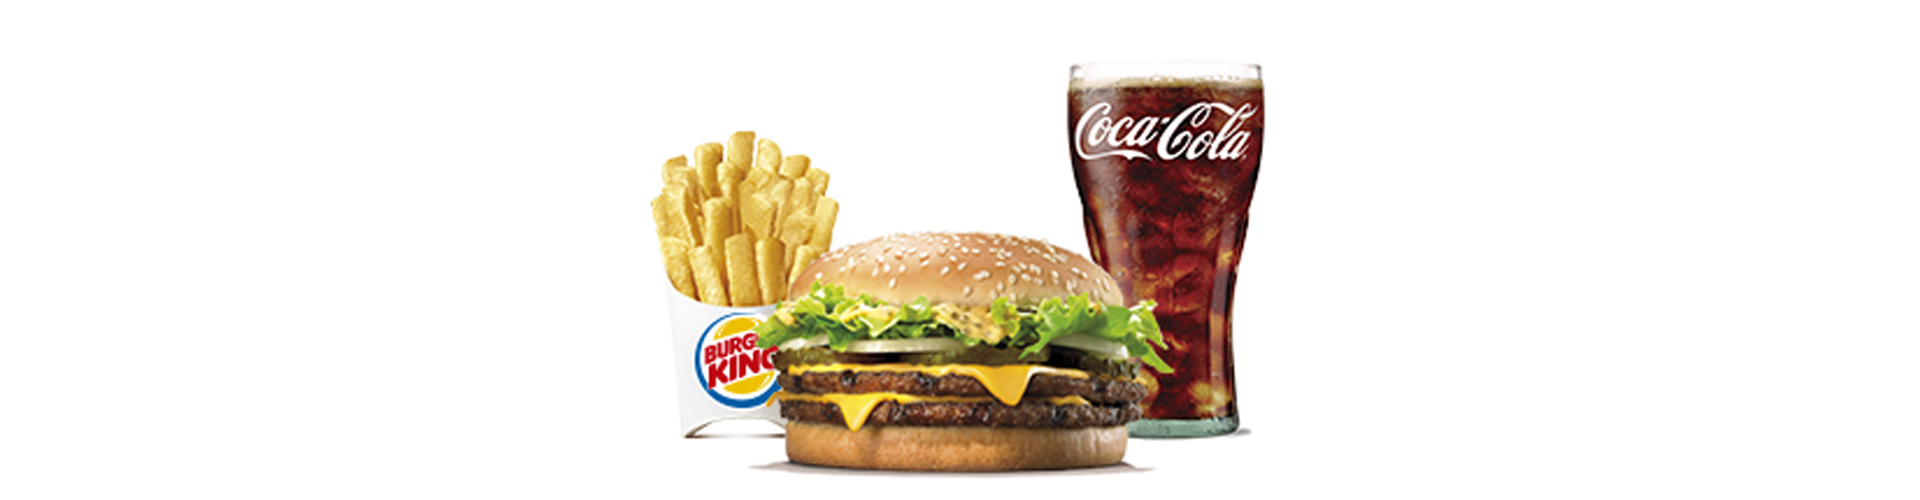 menu-big-king-burgerking-40001712-naranjada-aros